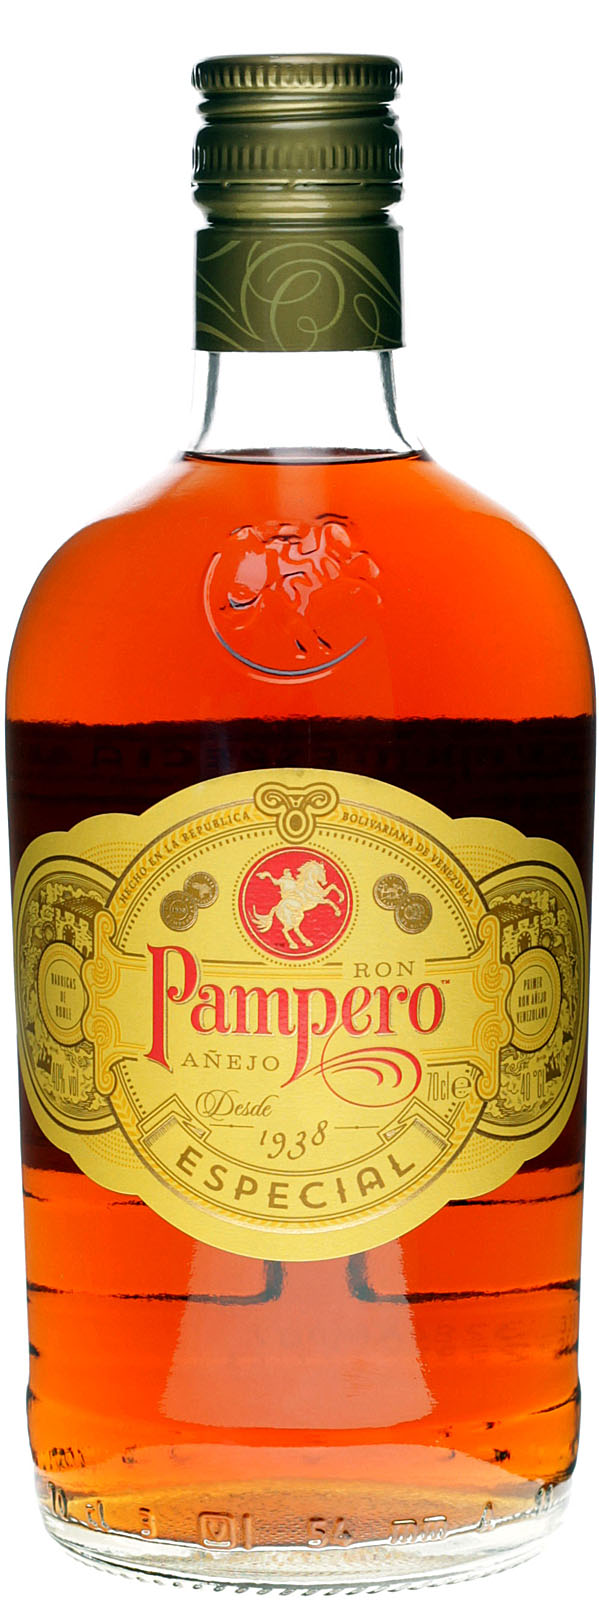 be aus Einer Especial Rum Anejo - Pampero der Venezuela